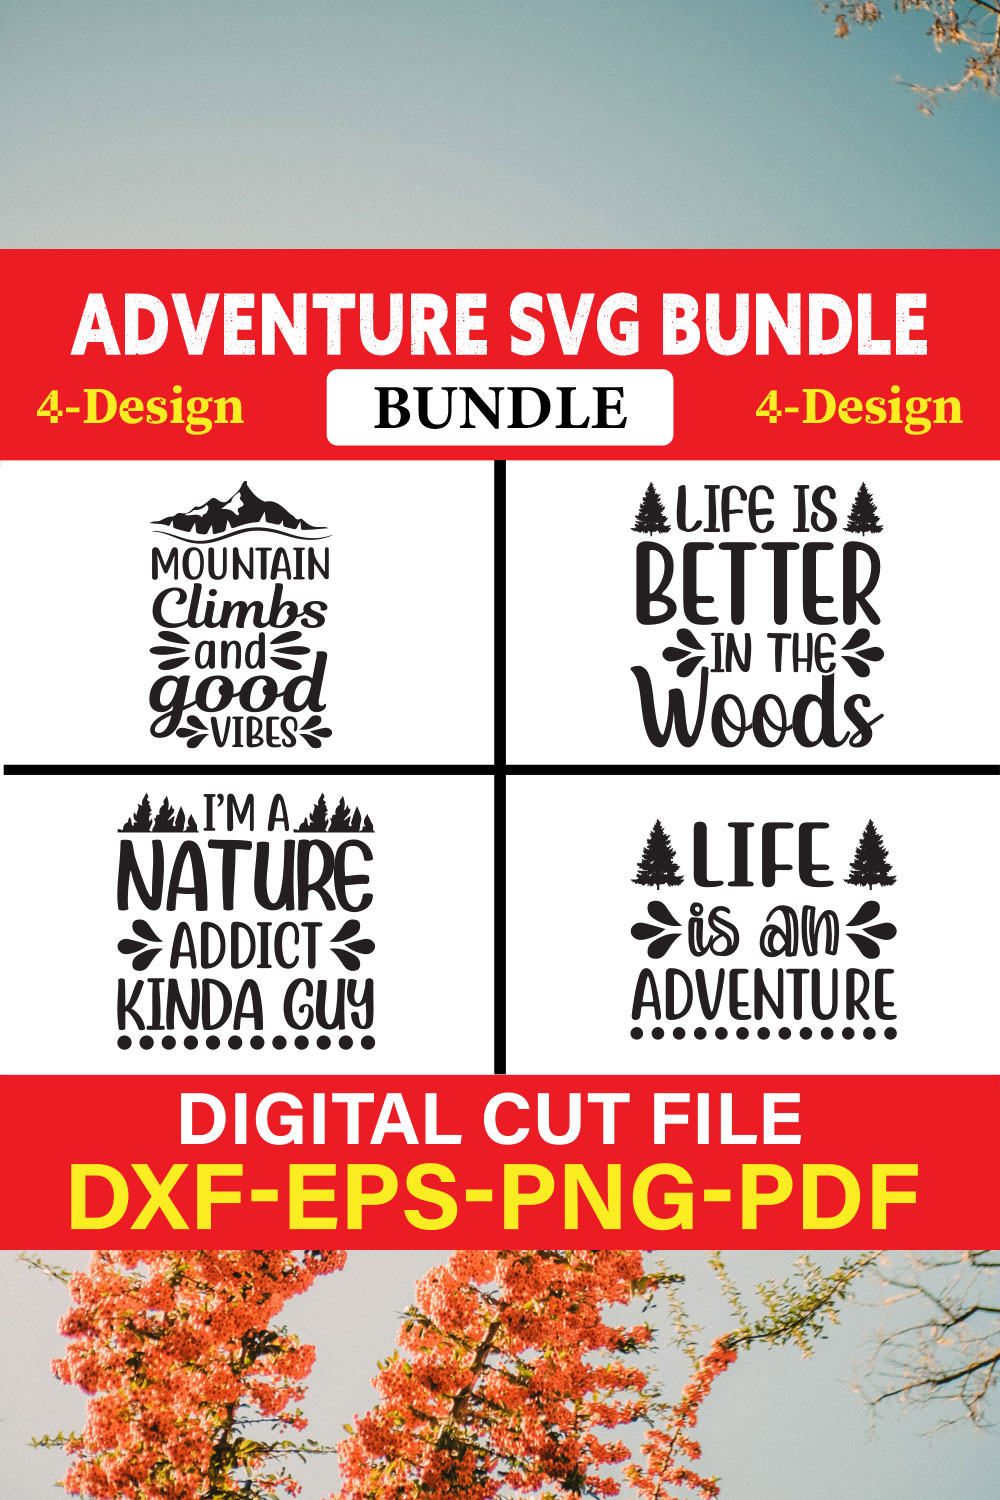 Adventure T-shirt Design Bundle Vol-3 pinterest preview image.